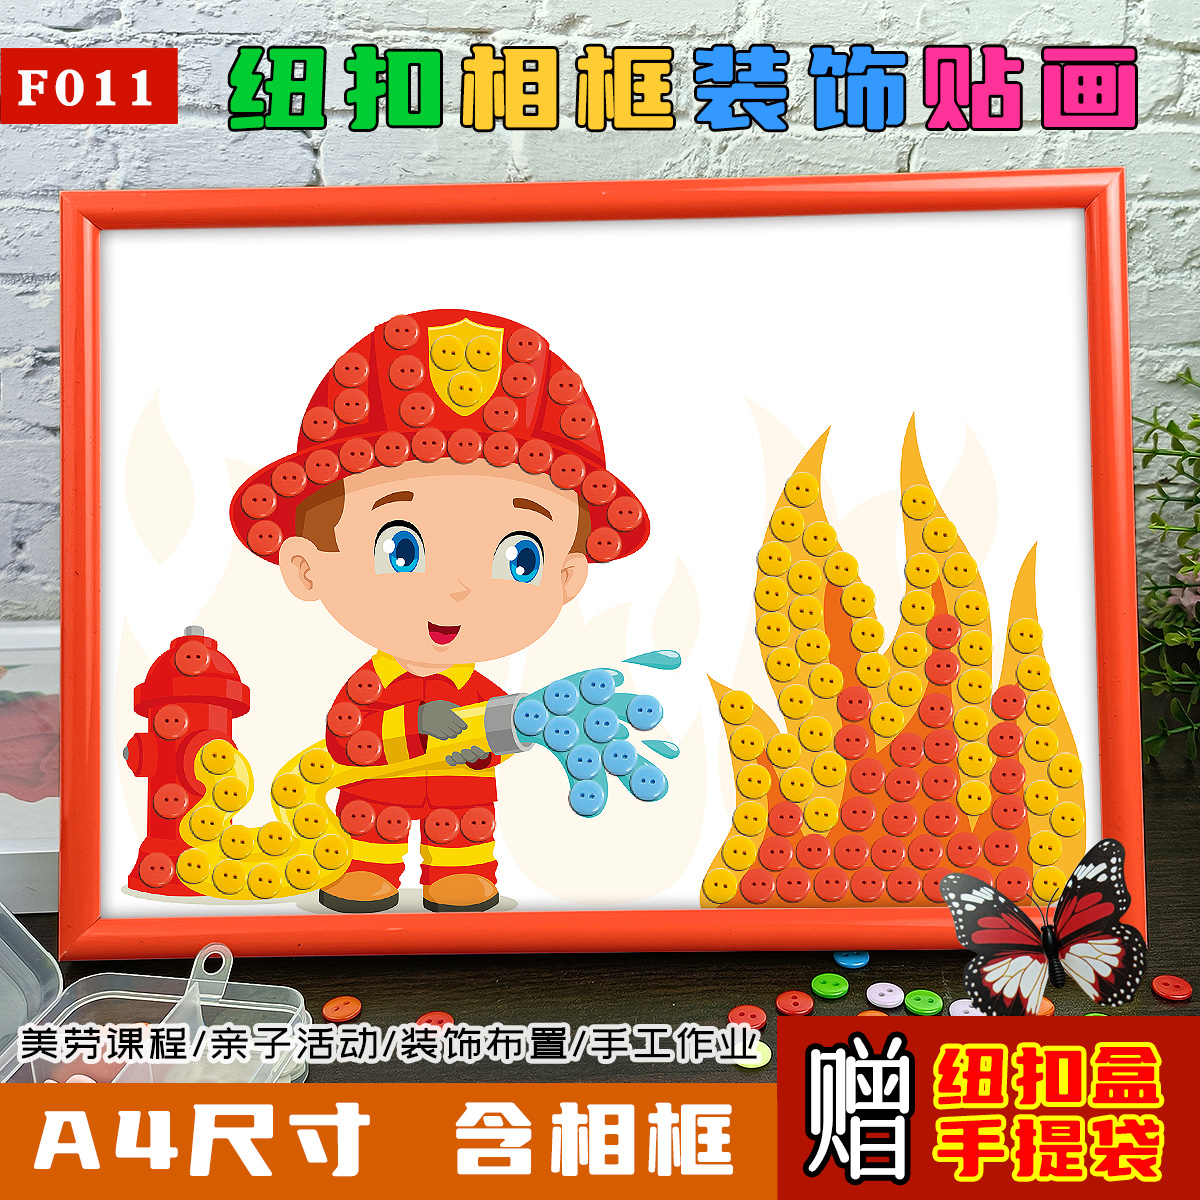 消防安全主题防火宣传儿童手工diy制作品幼儿园小学生纽扣粘贴画